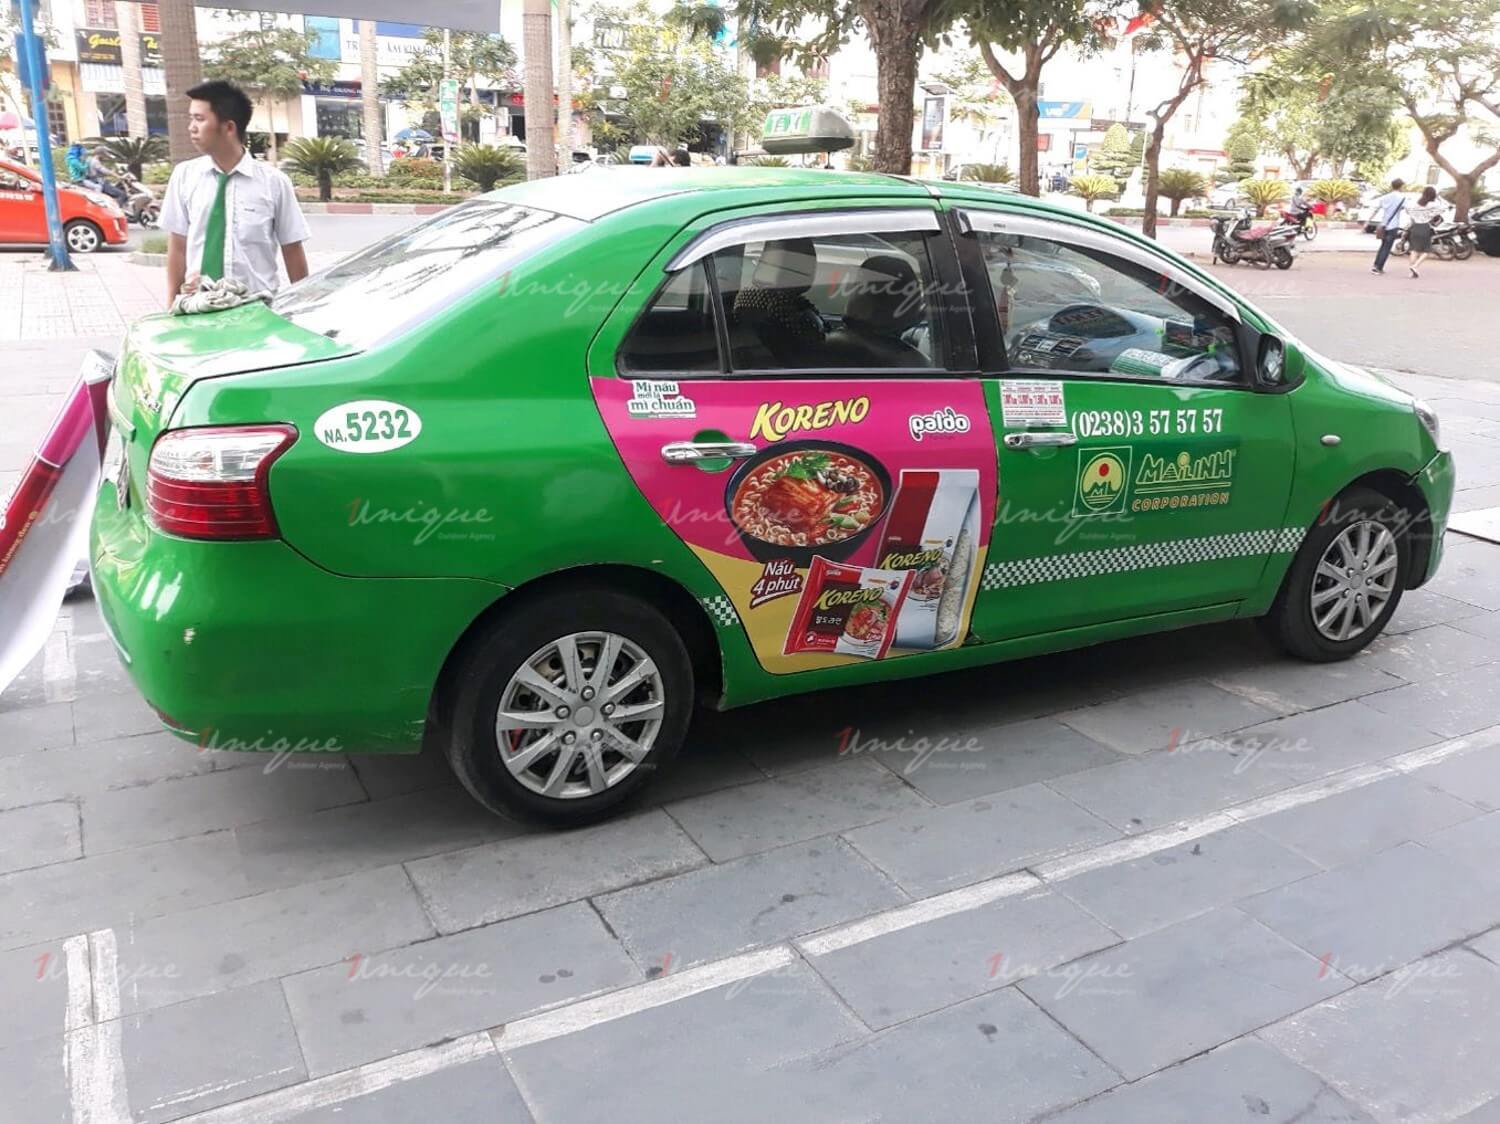 Koreno Jjajangmen chạy quảng cáo trên taxi